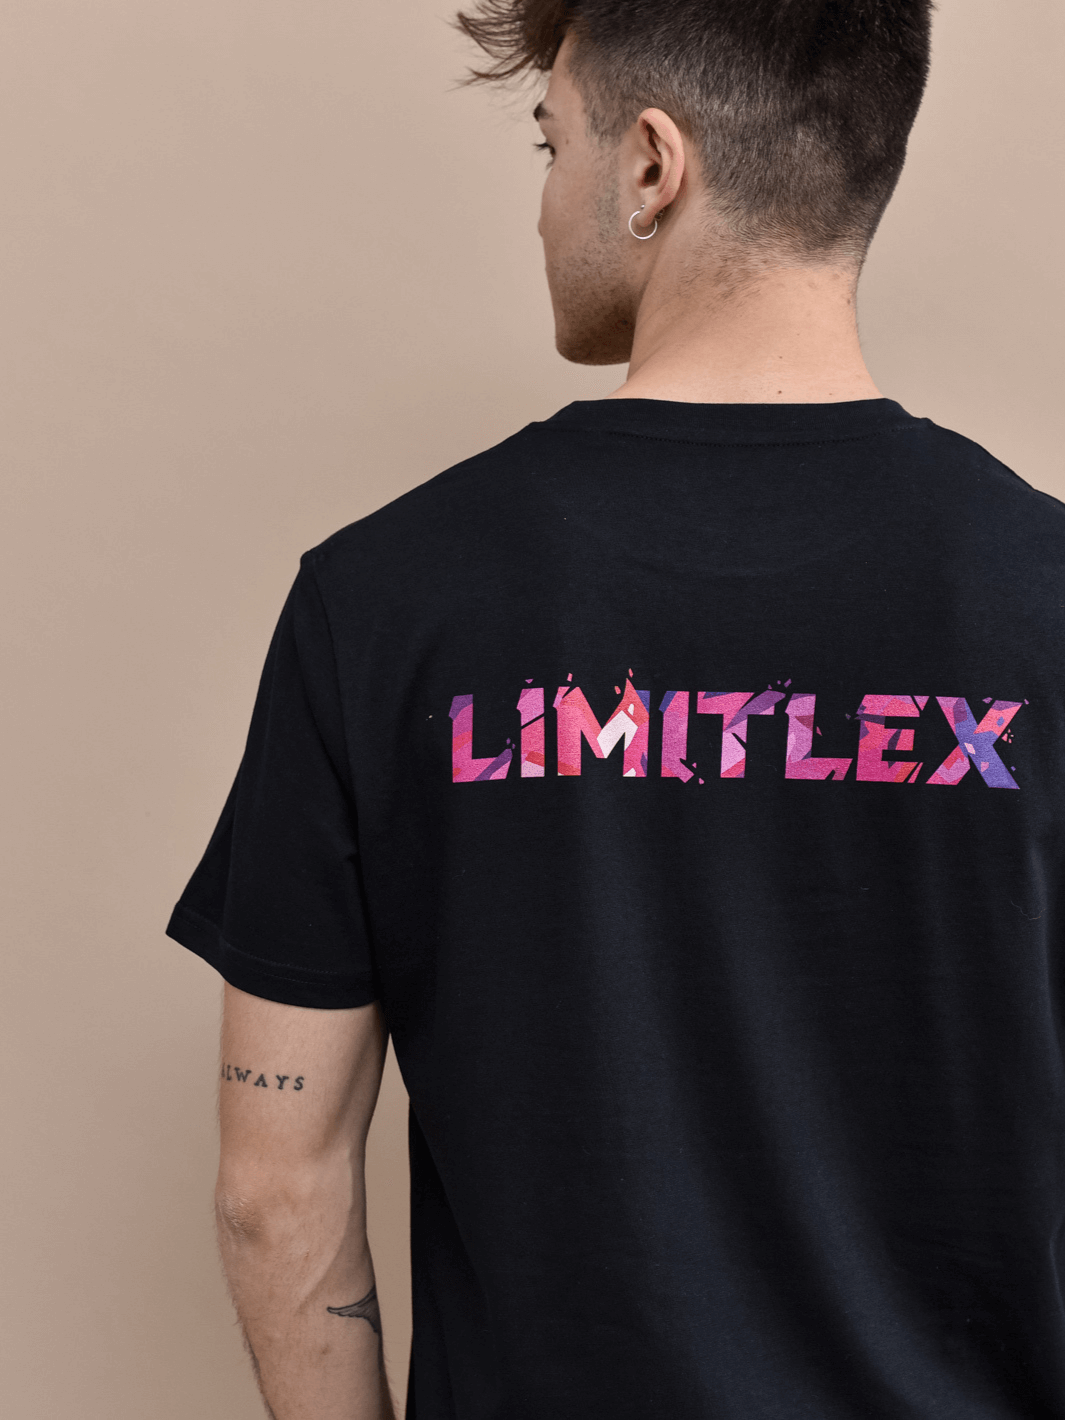 T-shirt essential Limitlex nera con scritta sul retro.